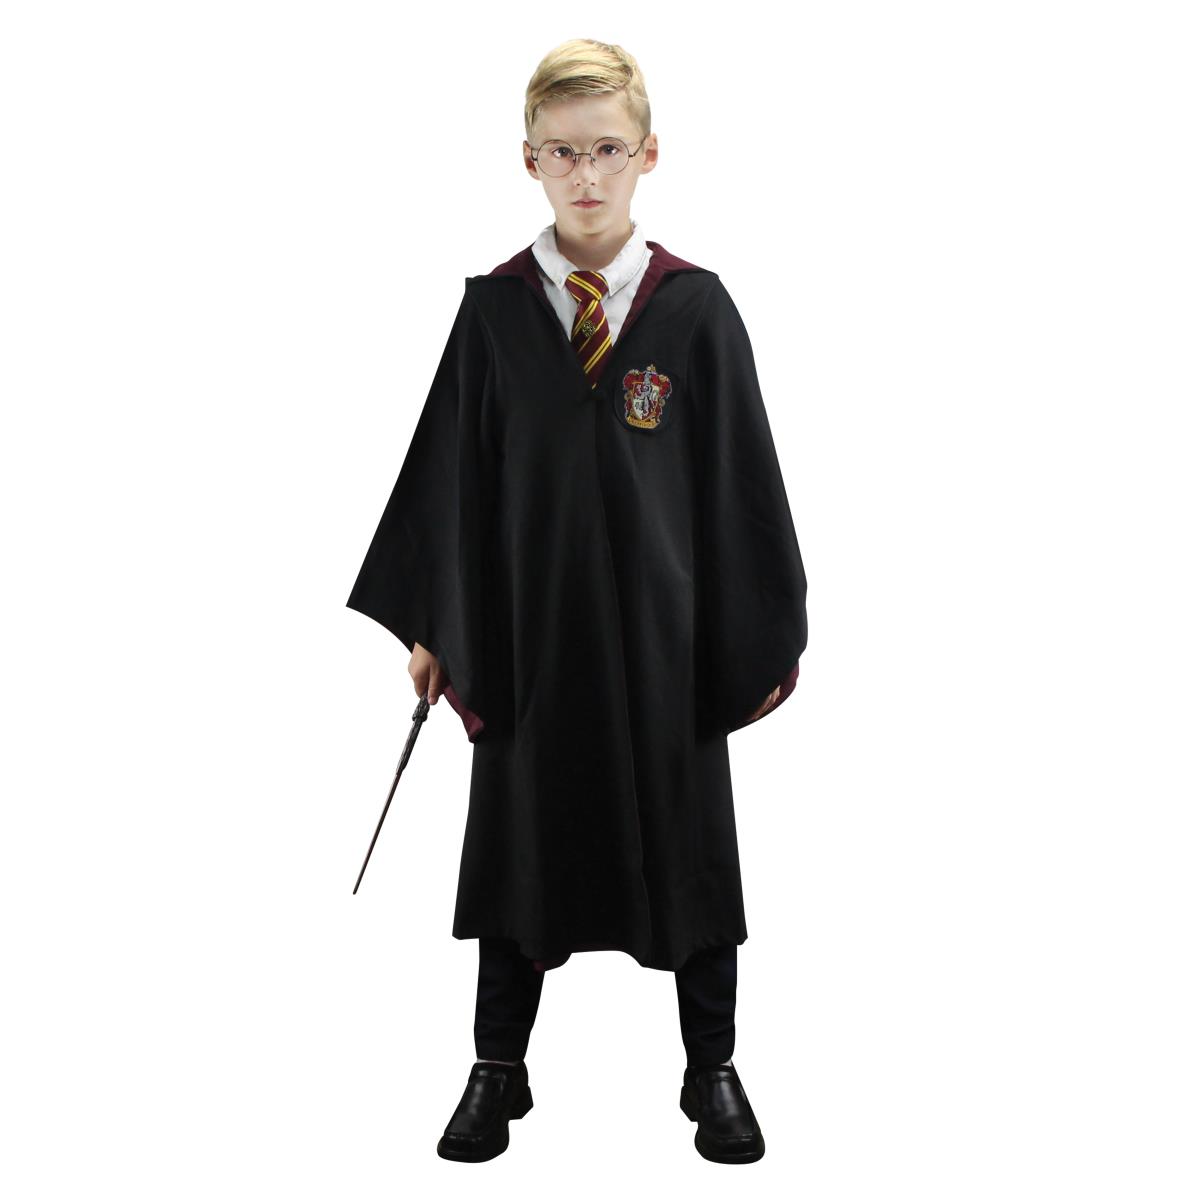 Harry Potter - Wizard robe gryffindor